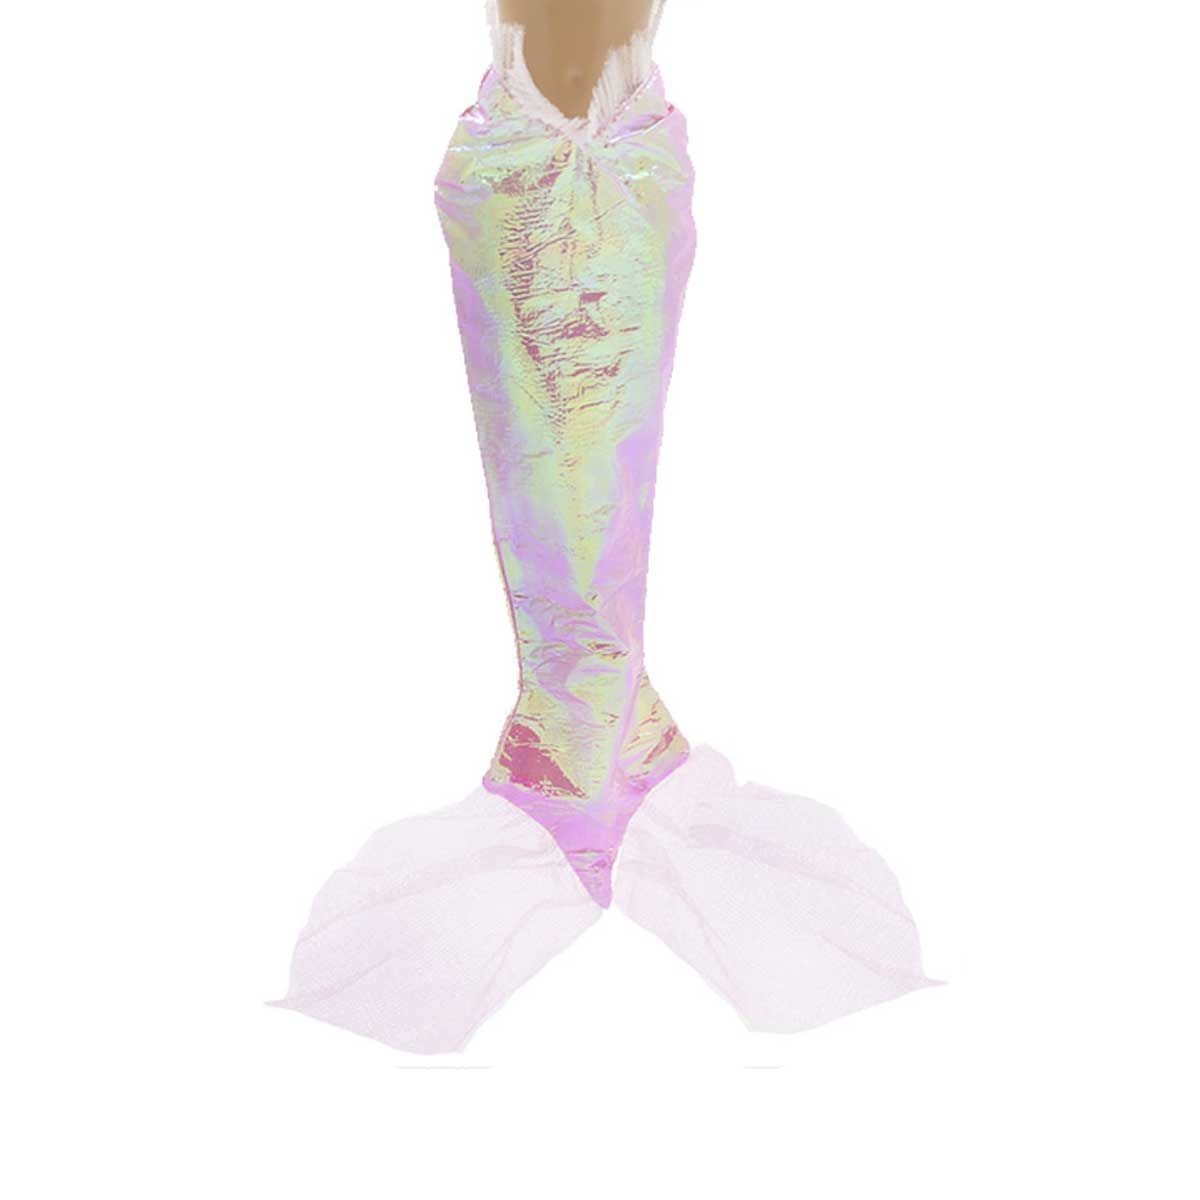 Хвост русалки Dolls Accessories для Барби и кукол 29 см bestway надувной матрас для плавания радужный хвост русалки 193х101 см